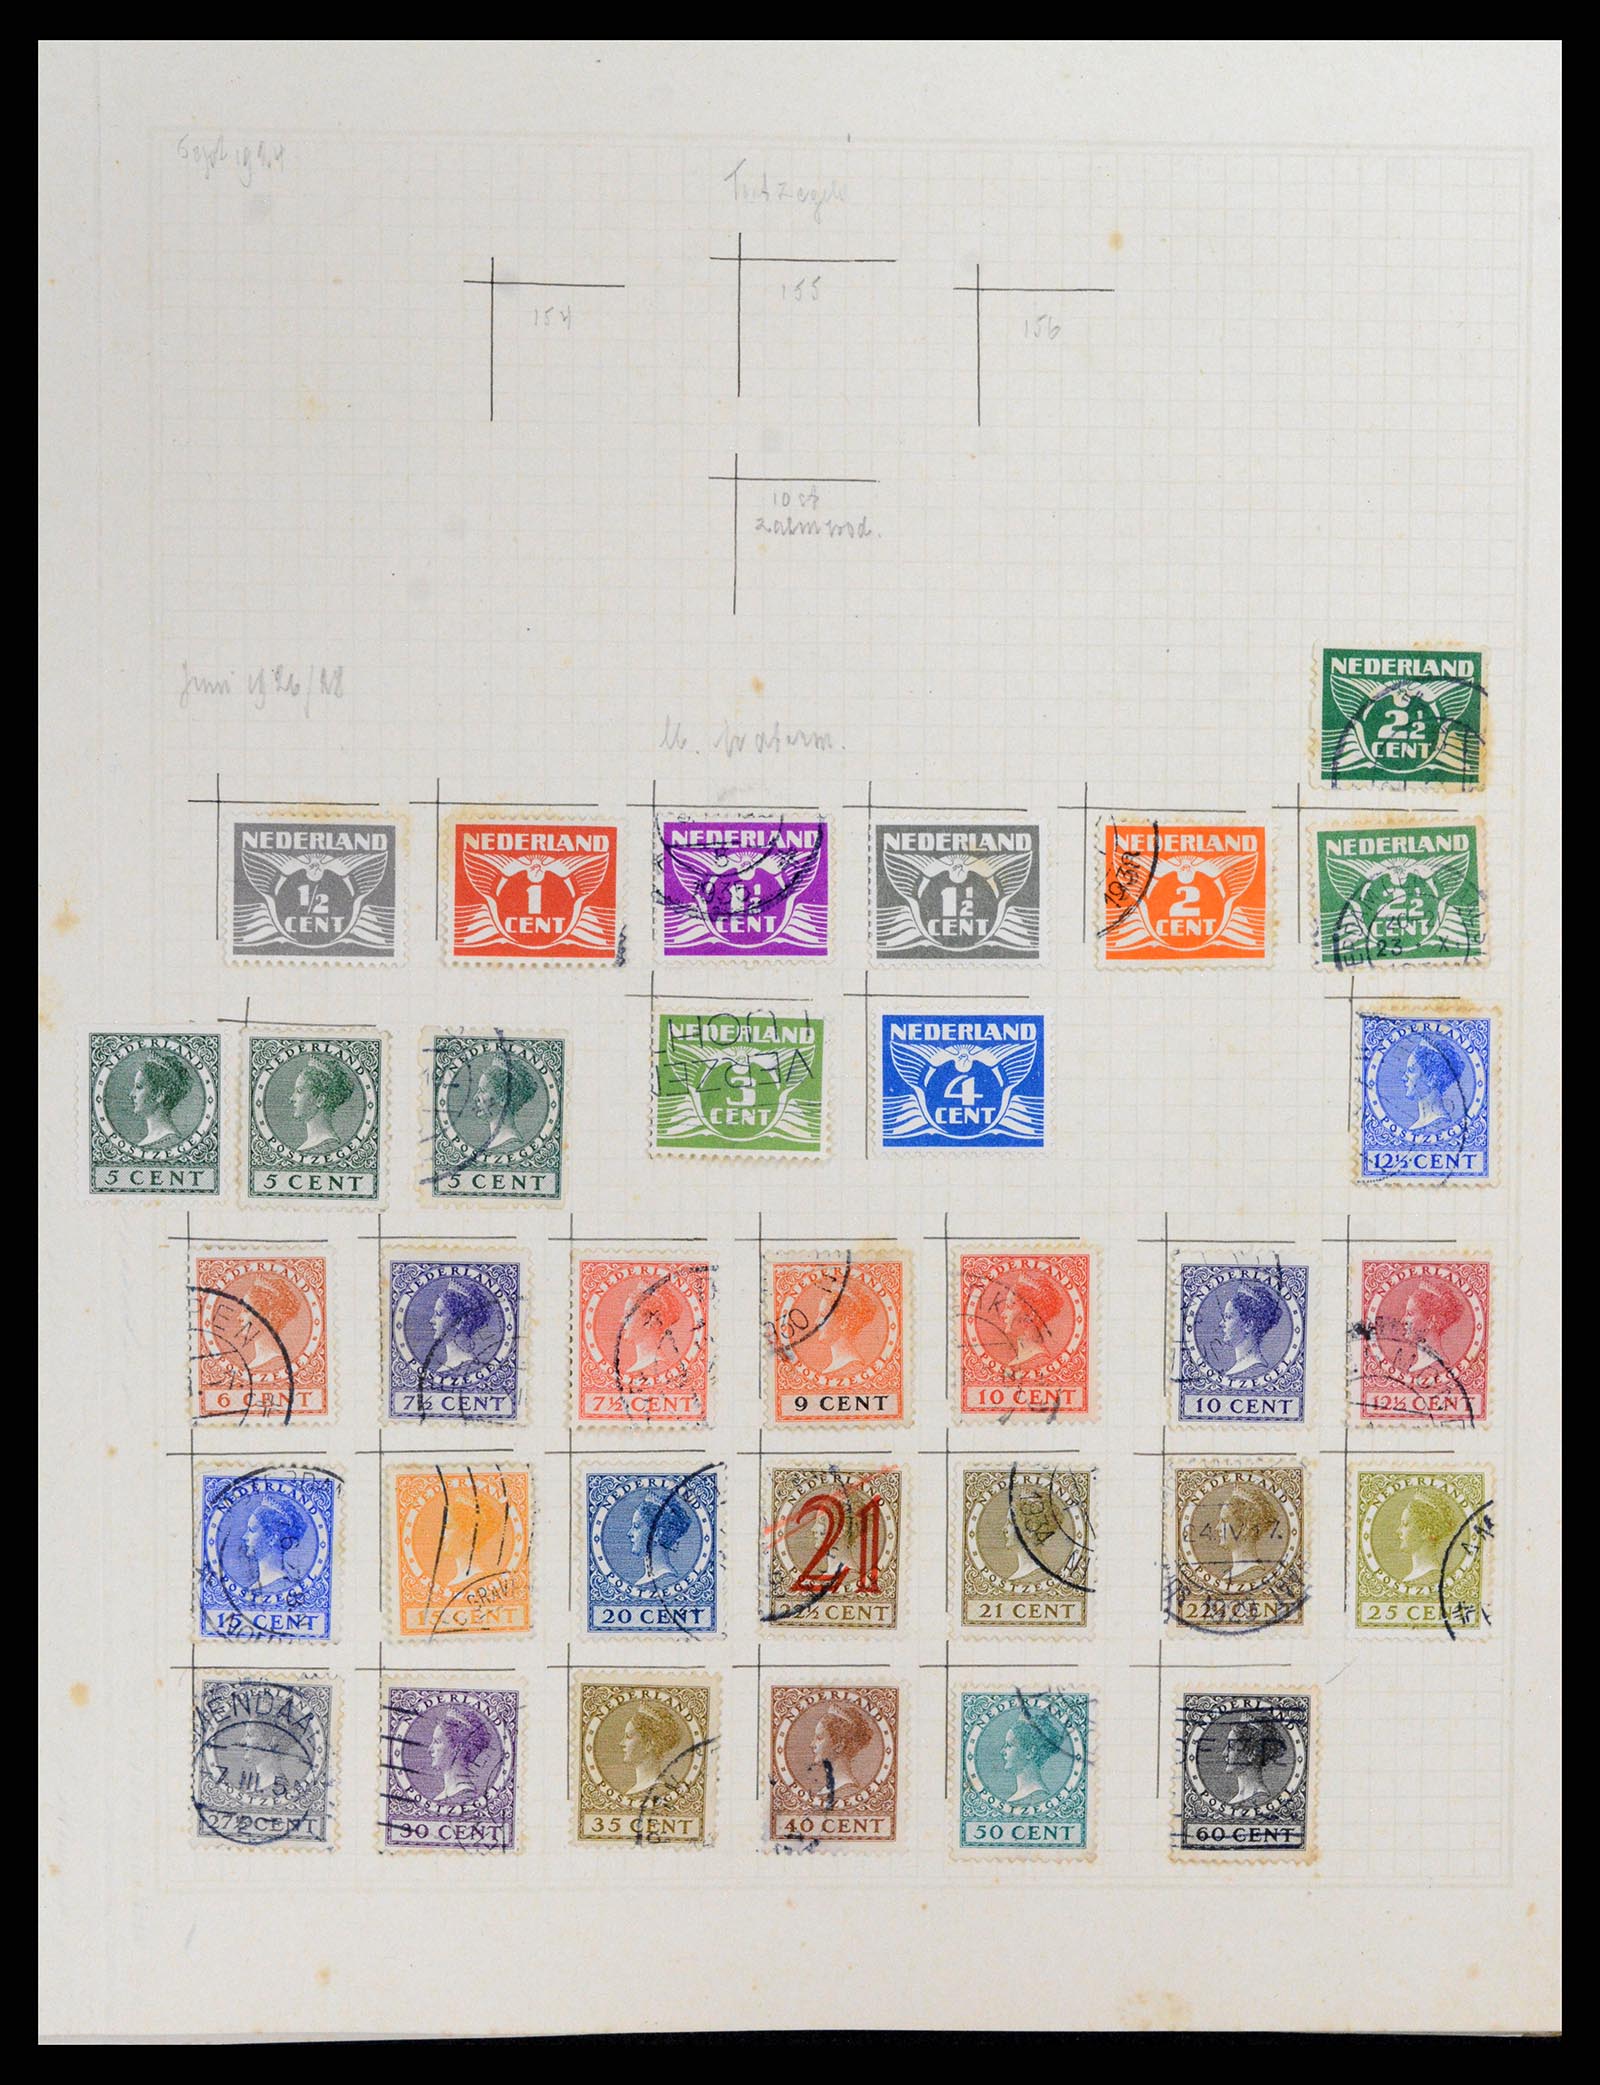 37868 010 - Postzegelverzameling 37868 Nederland en overzeese gebiedsdelen 1864-1